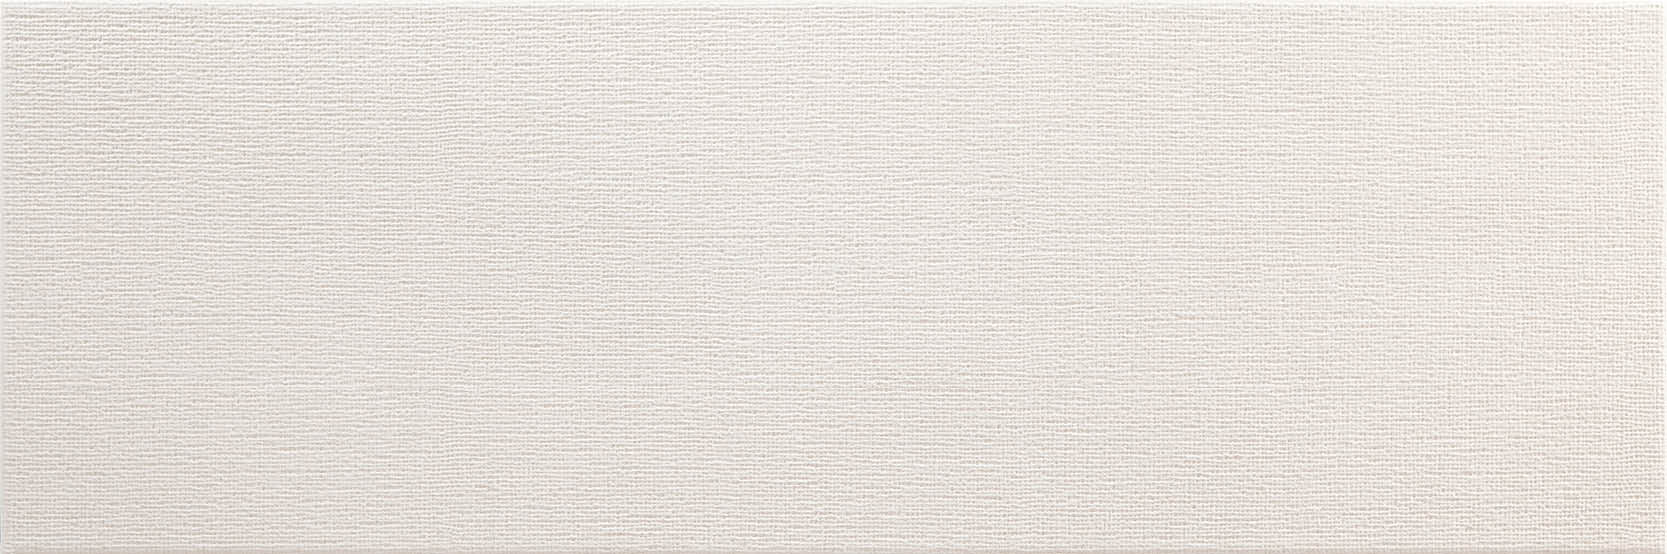 sammys-designer-flooring-tile-full-size-toulouse-white.jpg